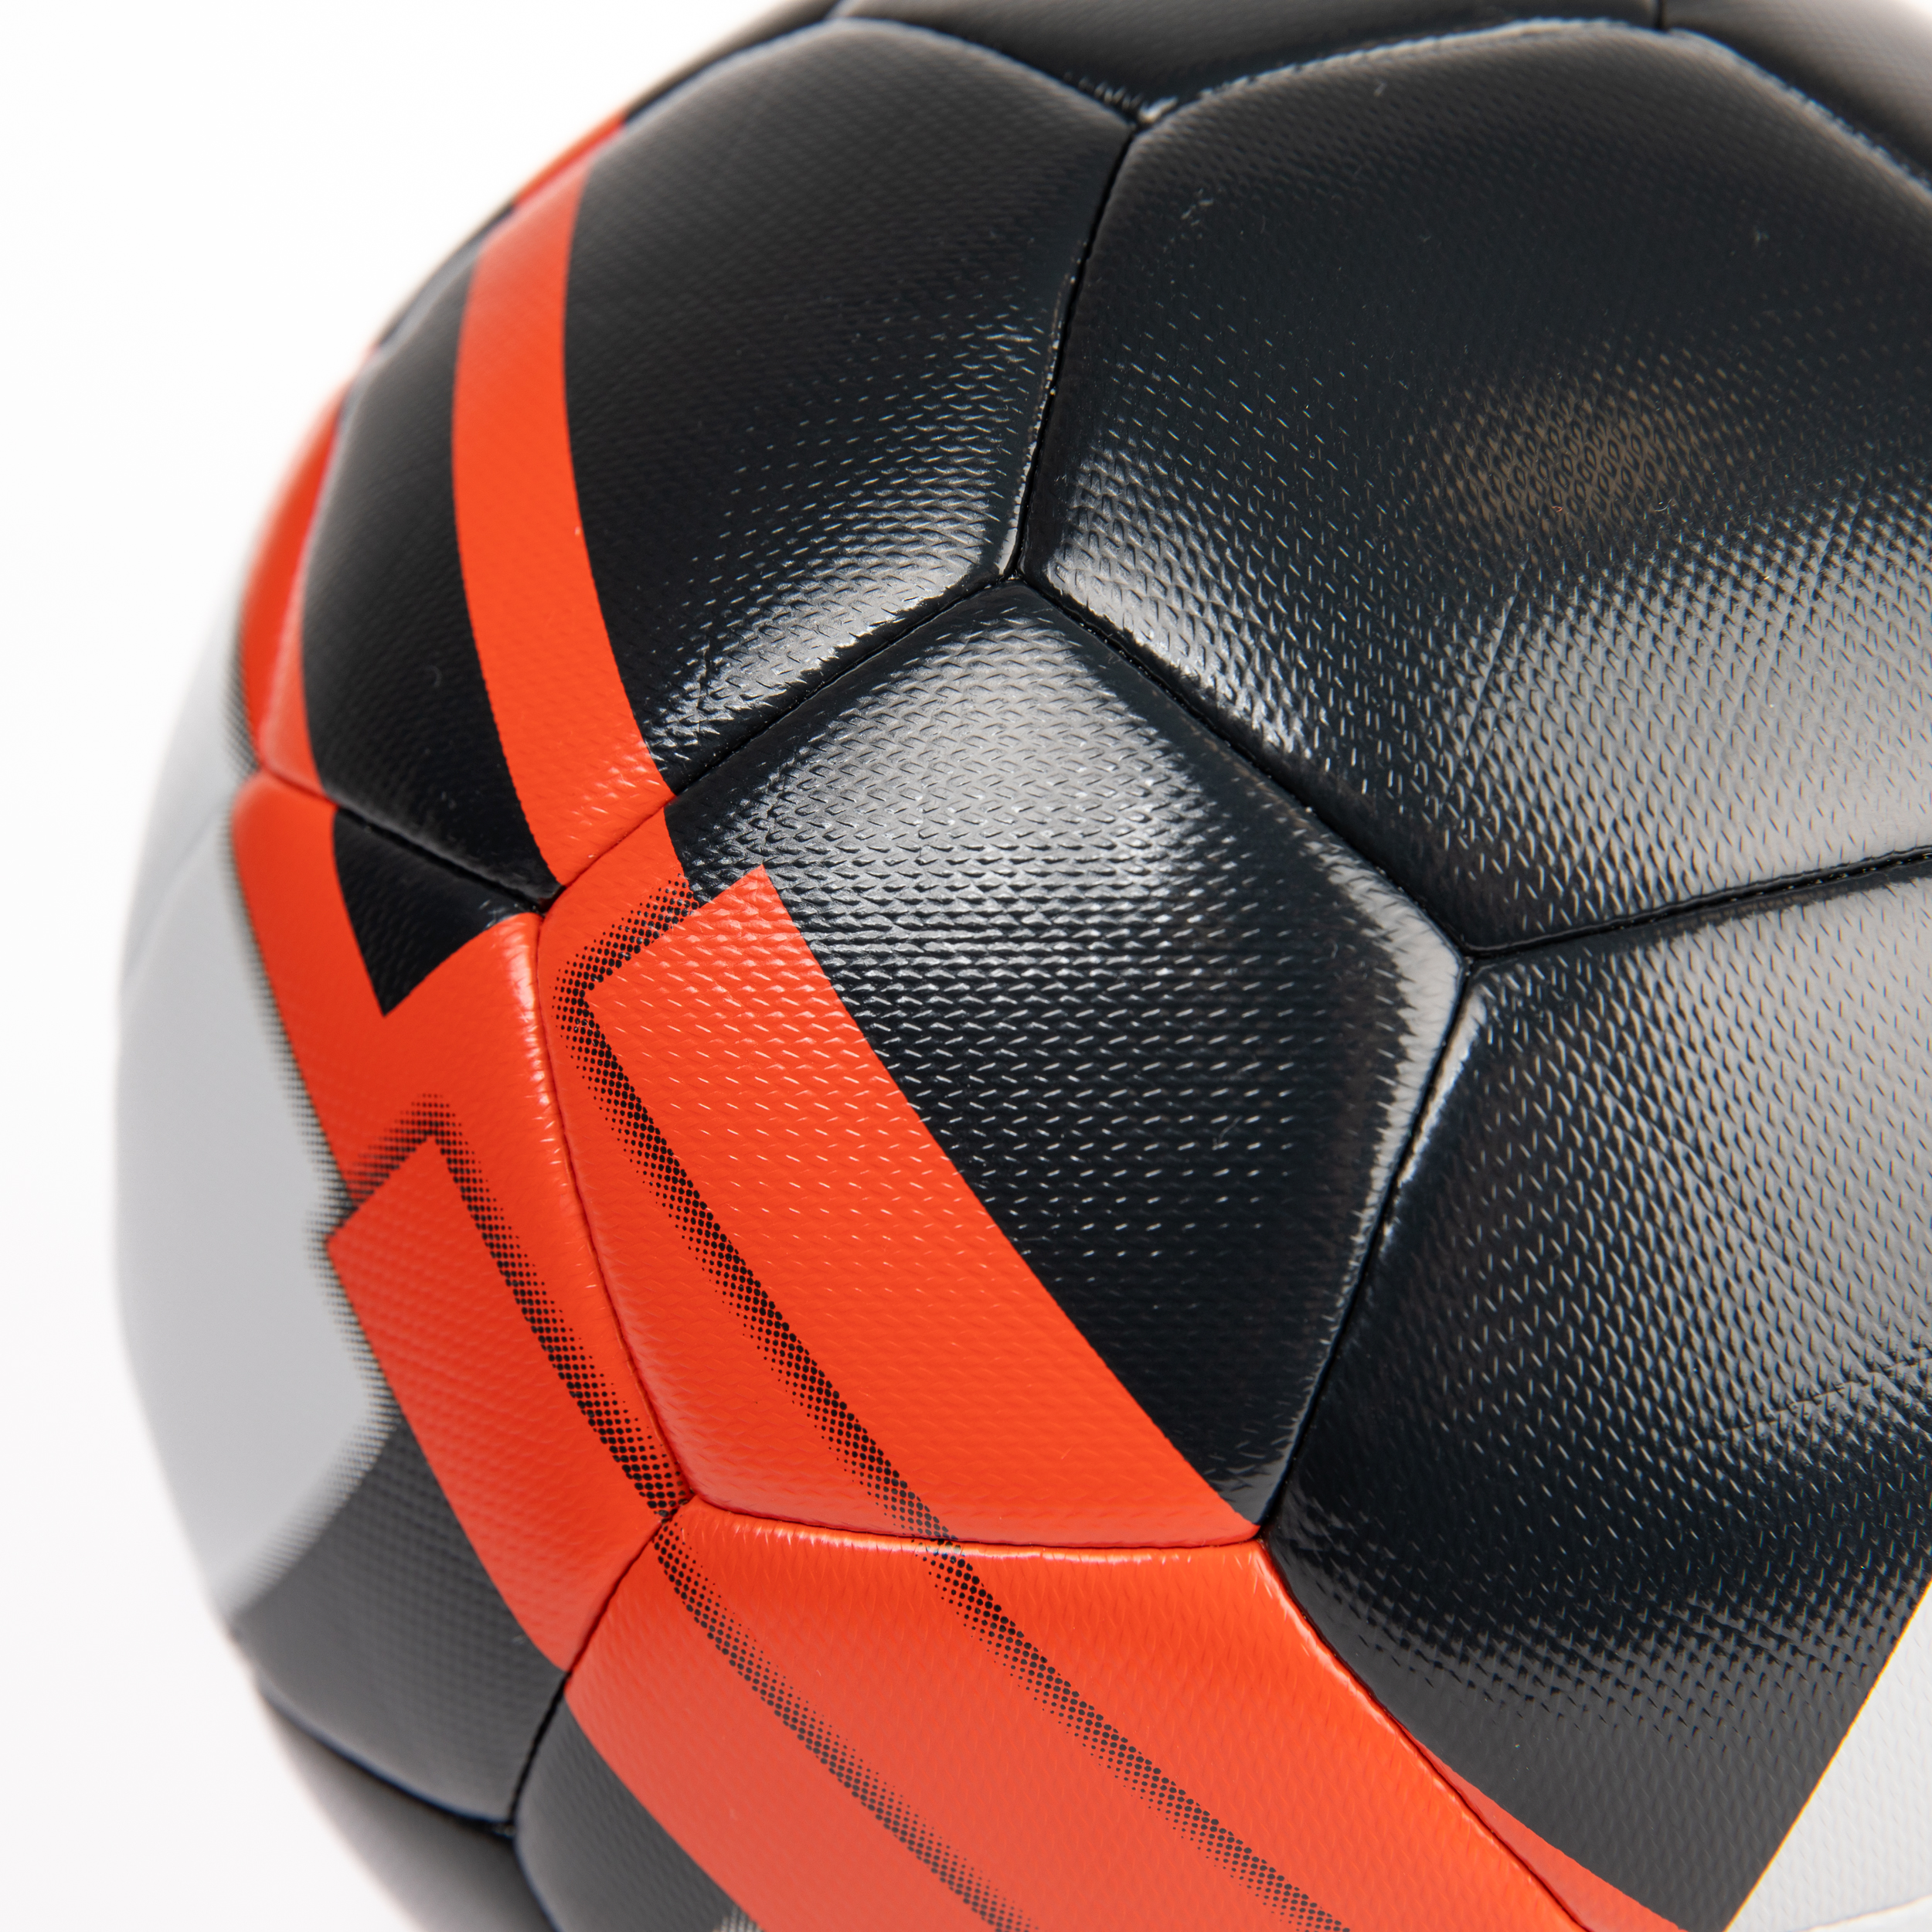 Designs ballon de football lumineux à la mode et uniques sur les